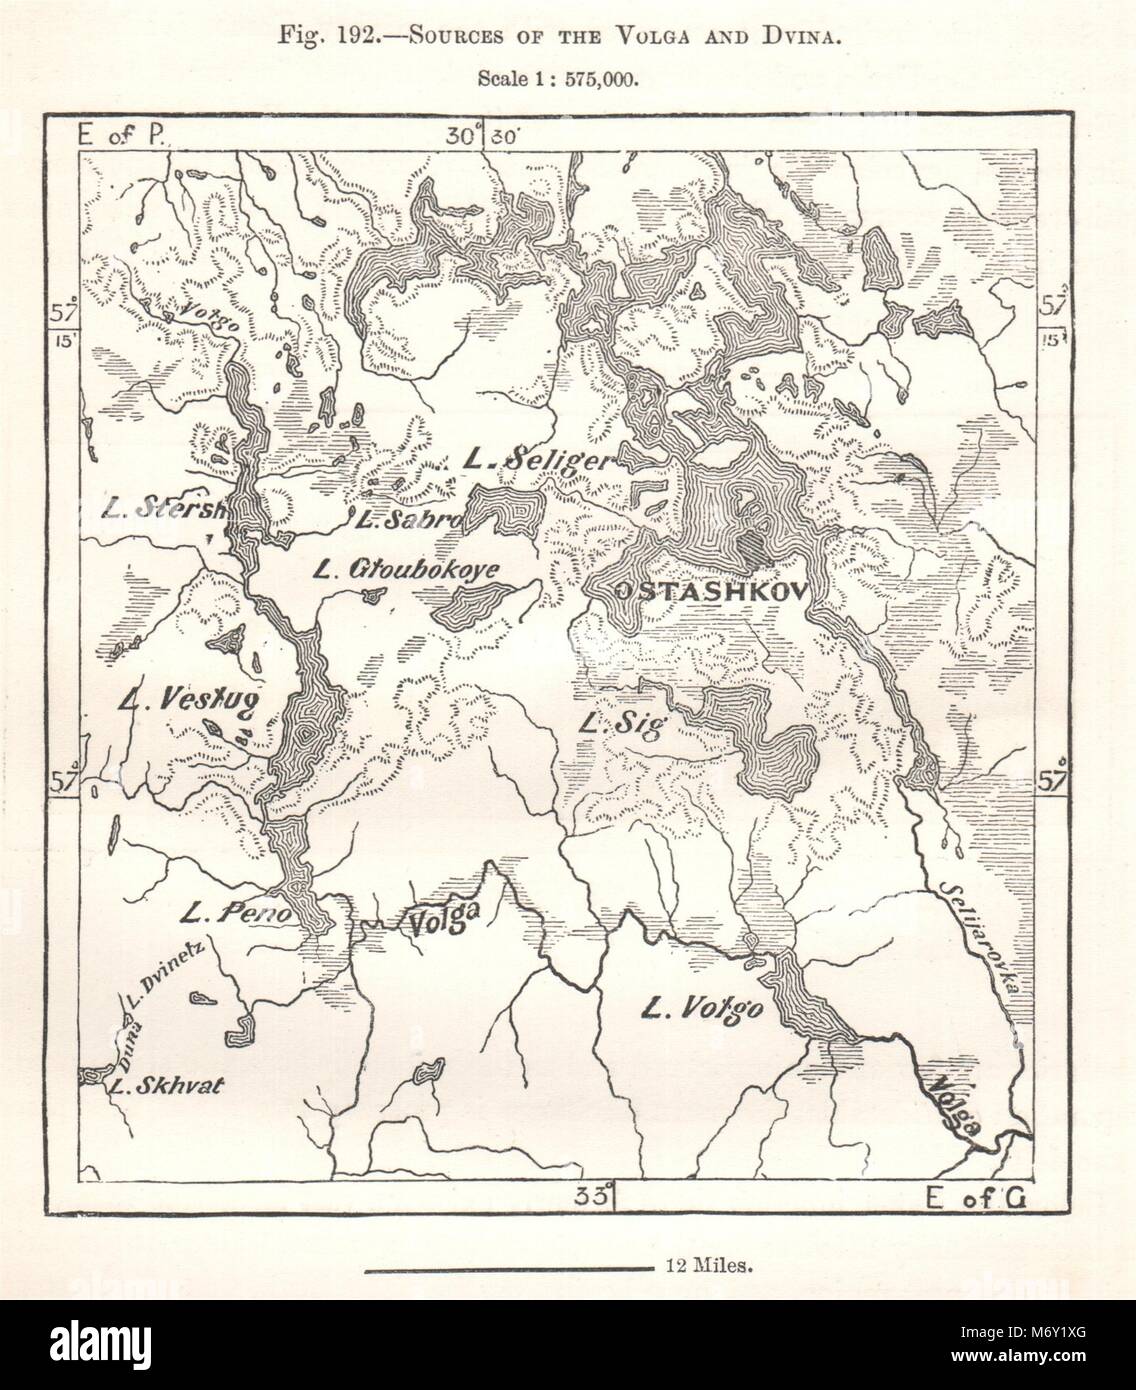 Quellen der Wolga und dwina. Orrefors Russland. Kartenskizze 1885 alte Stockfoto